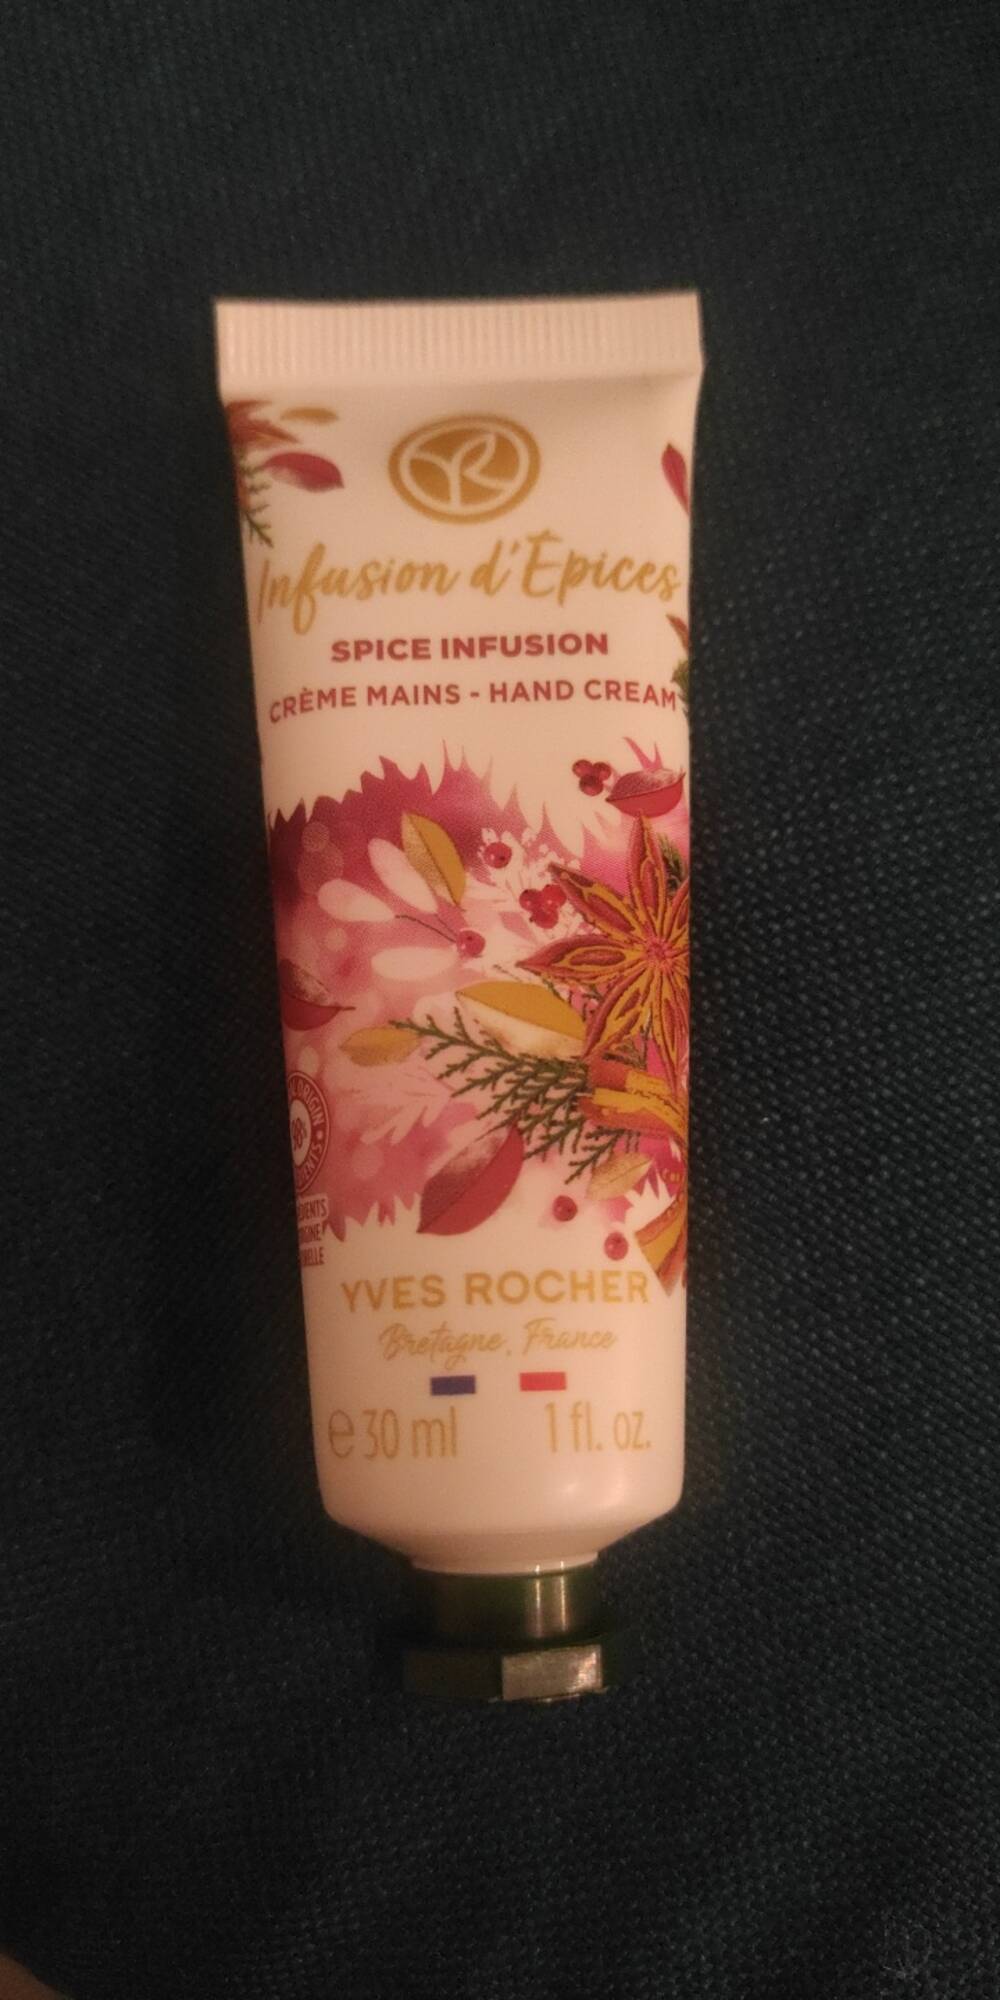 Crème Mains Infusion d'Épices - Yves Rocher